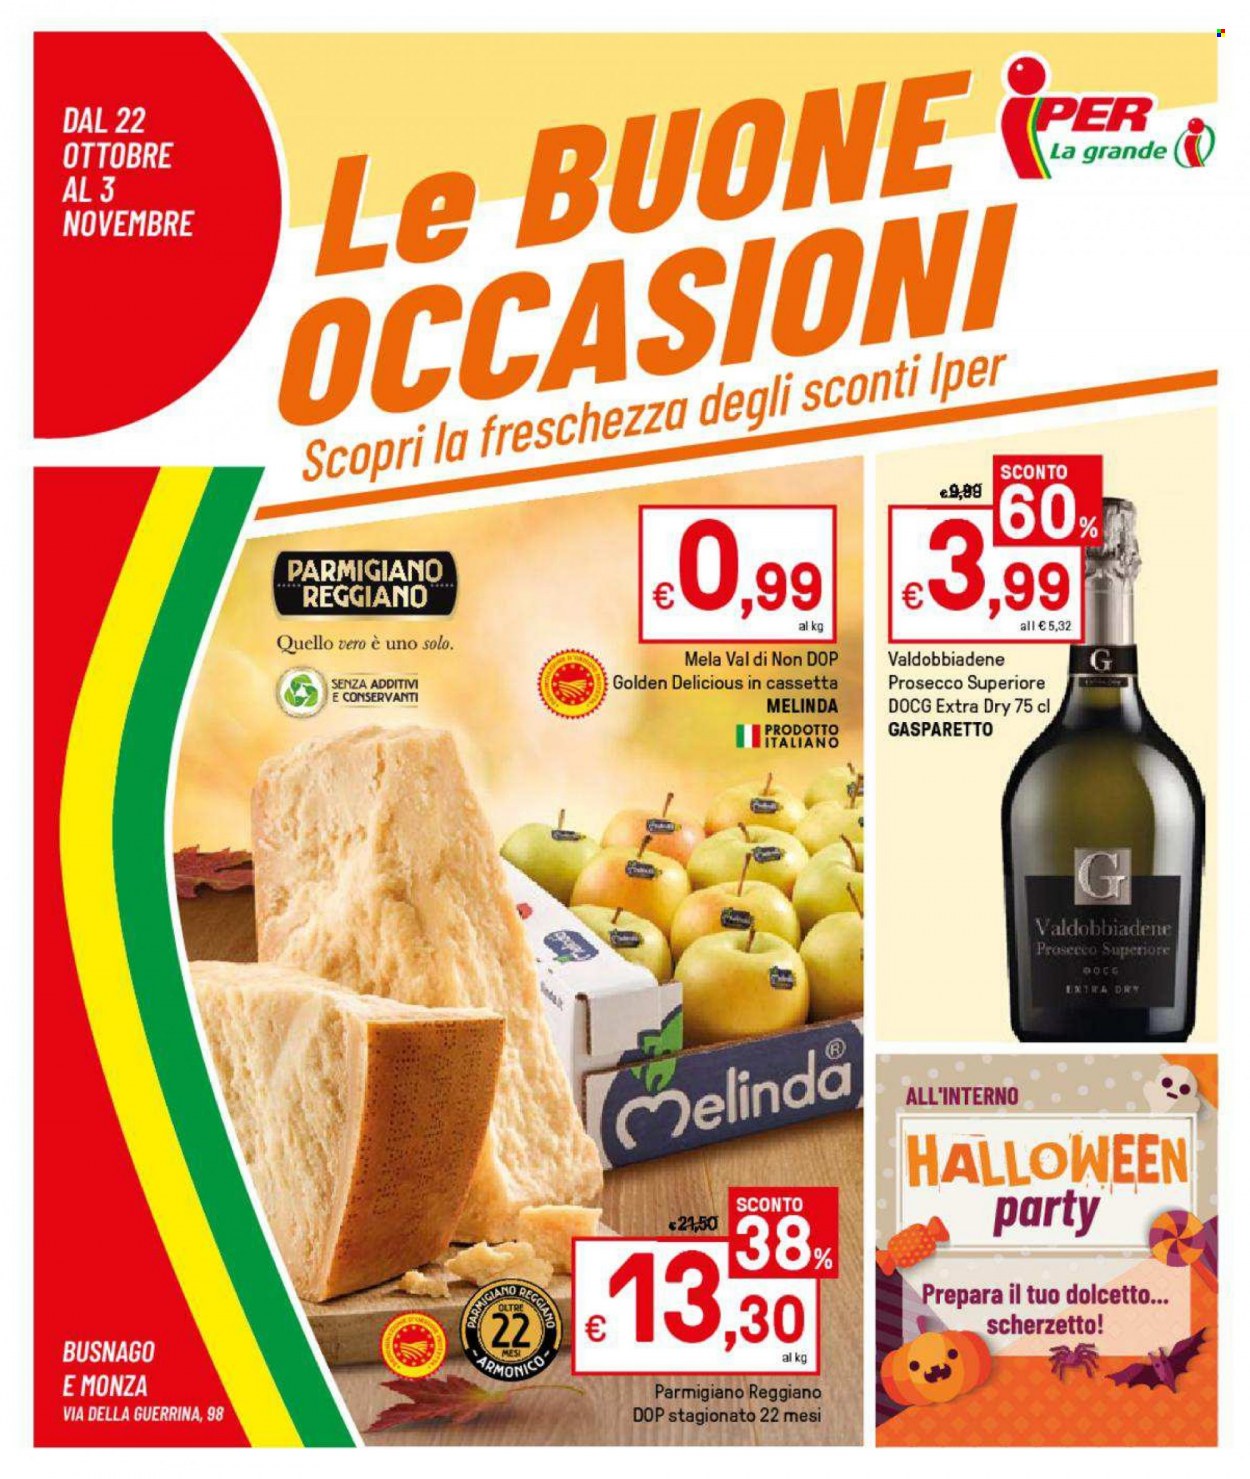 thumbnail - Volantino Iper, La grande i - 22/10/2021 - 3/11/2021 - Prodotti in offerta - Golden Delicious, formaggio, parmigiano, Valdobbiadene, Prosecco. Pagina 1.